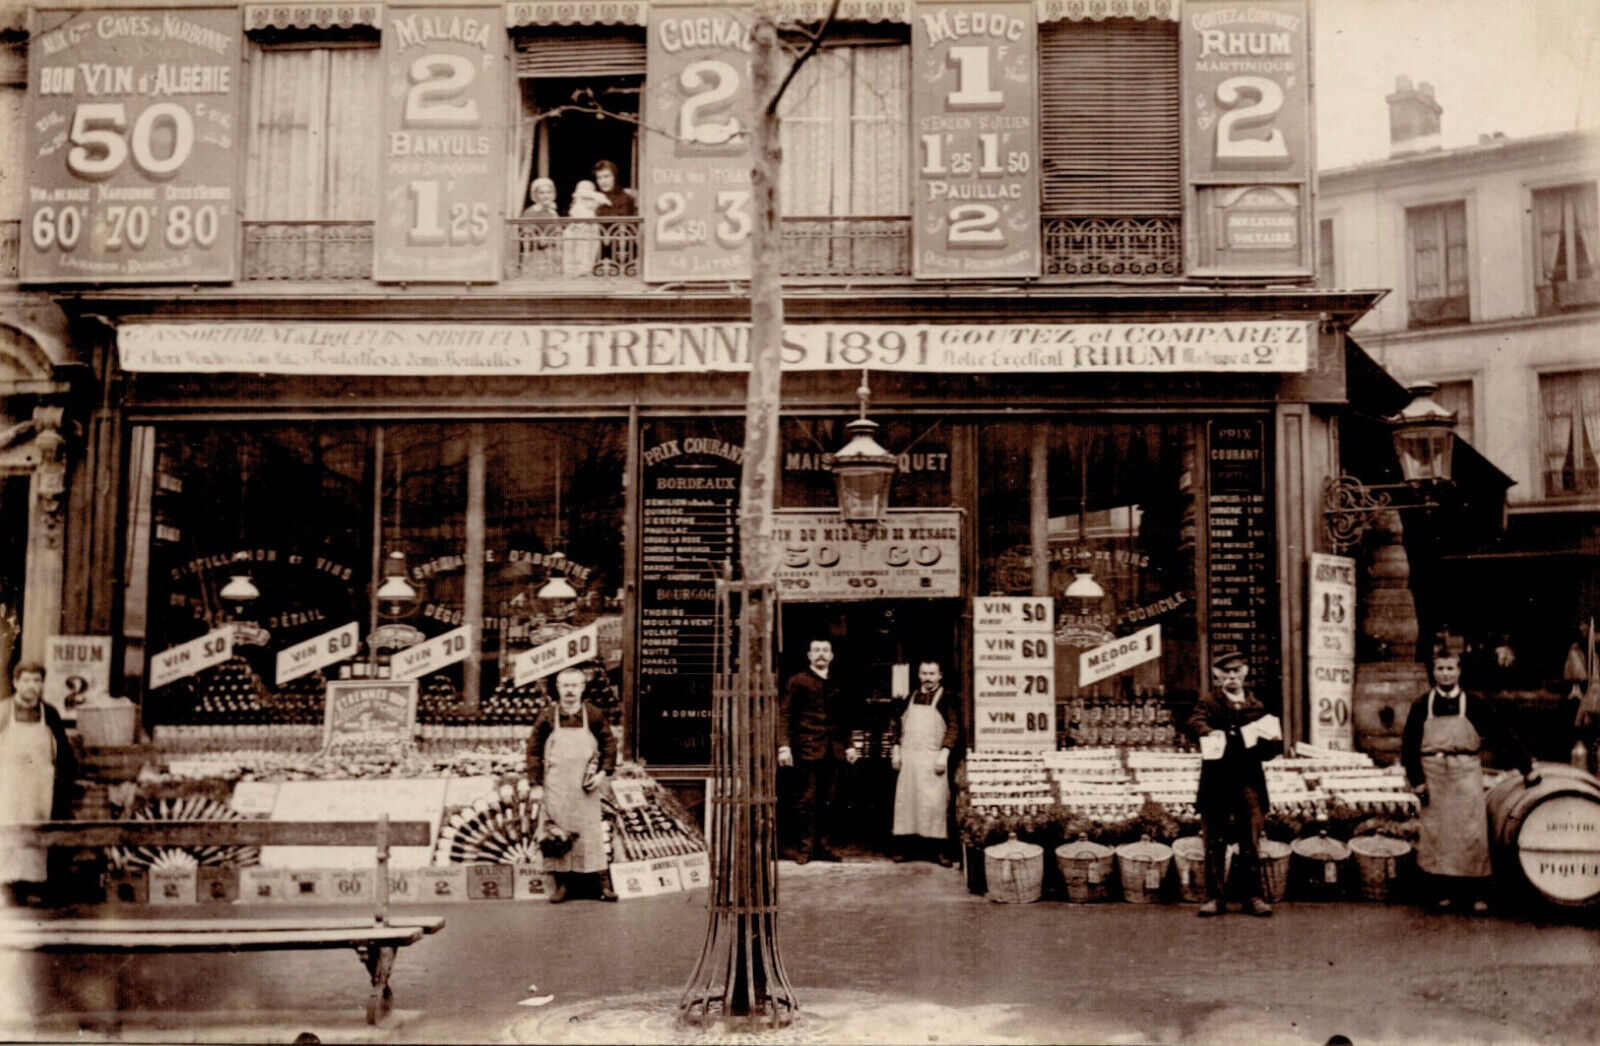 France. Paris - Maison Piquet. Voltaire Boulevard. 1891. Wine Merchant